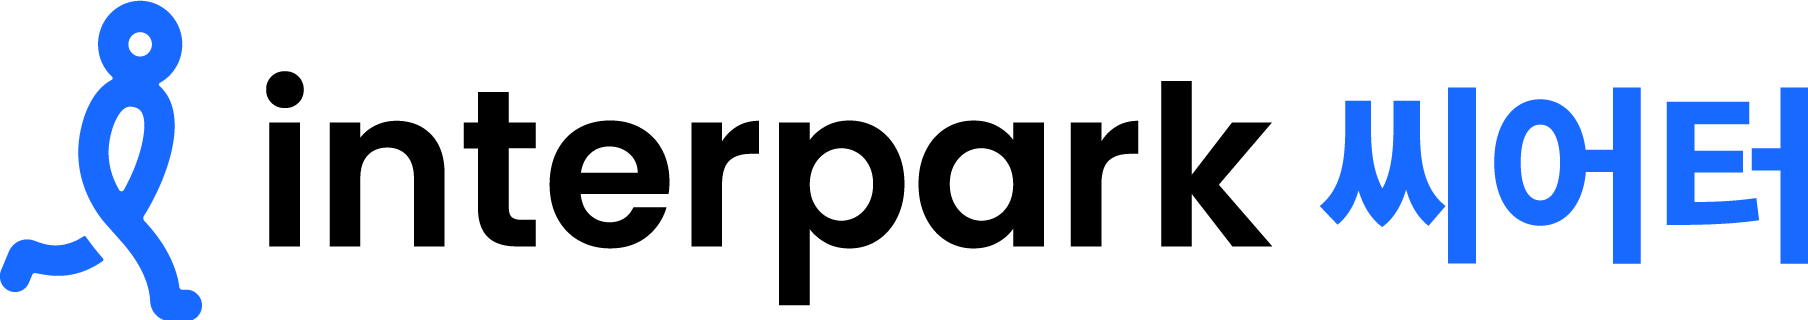 야놀자의 계열사 (주)인터파크씨어터의 로고